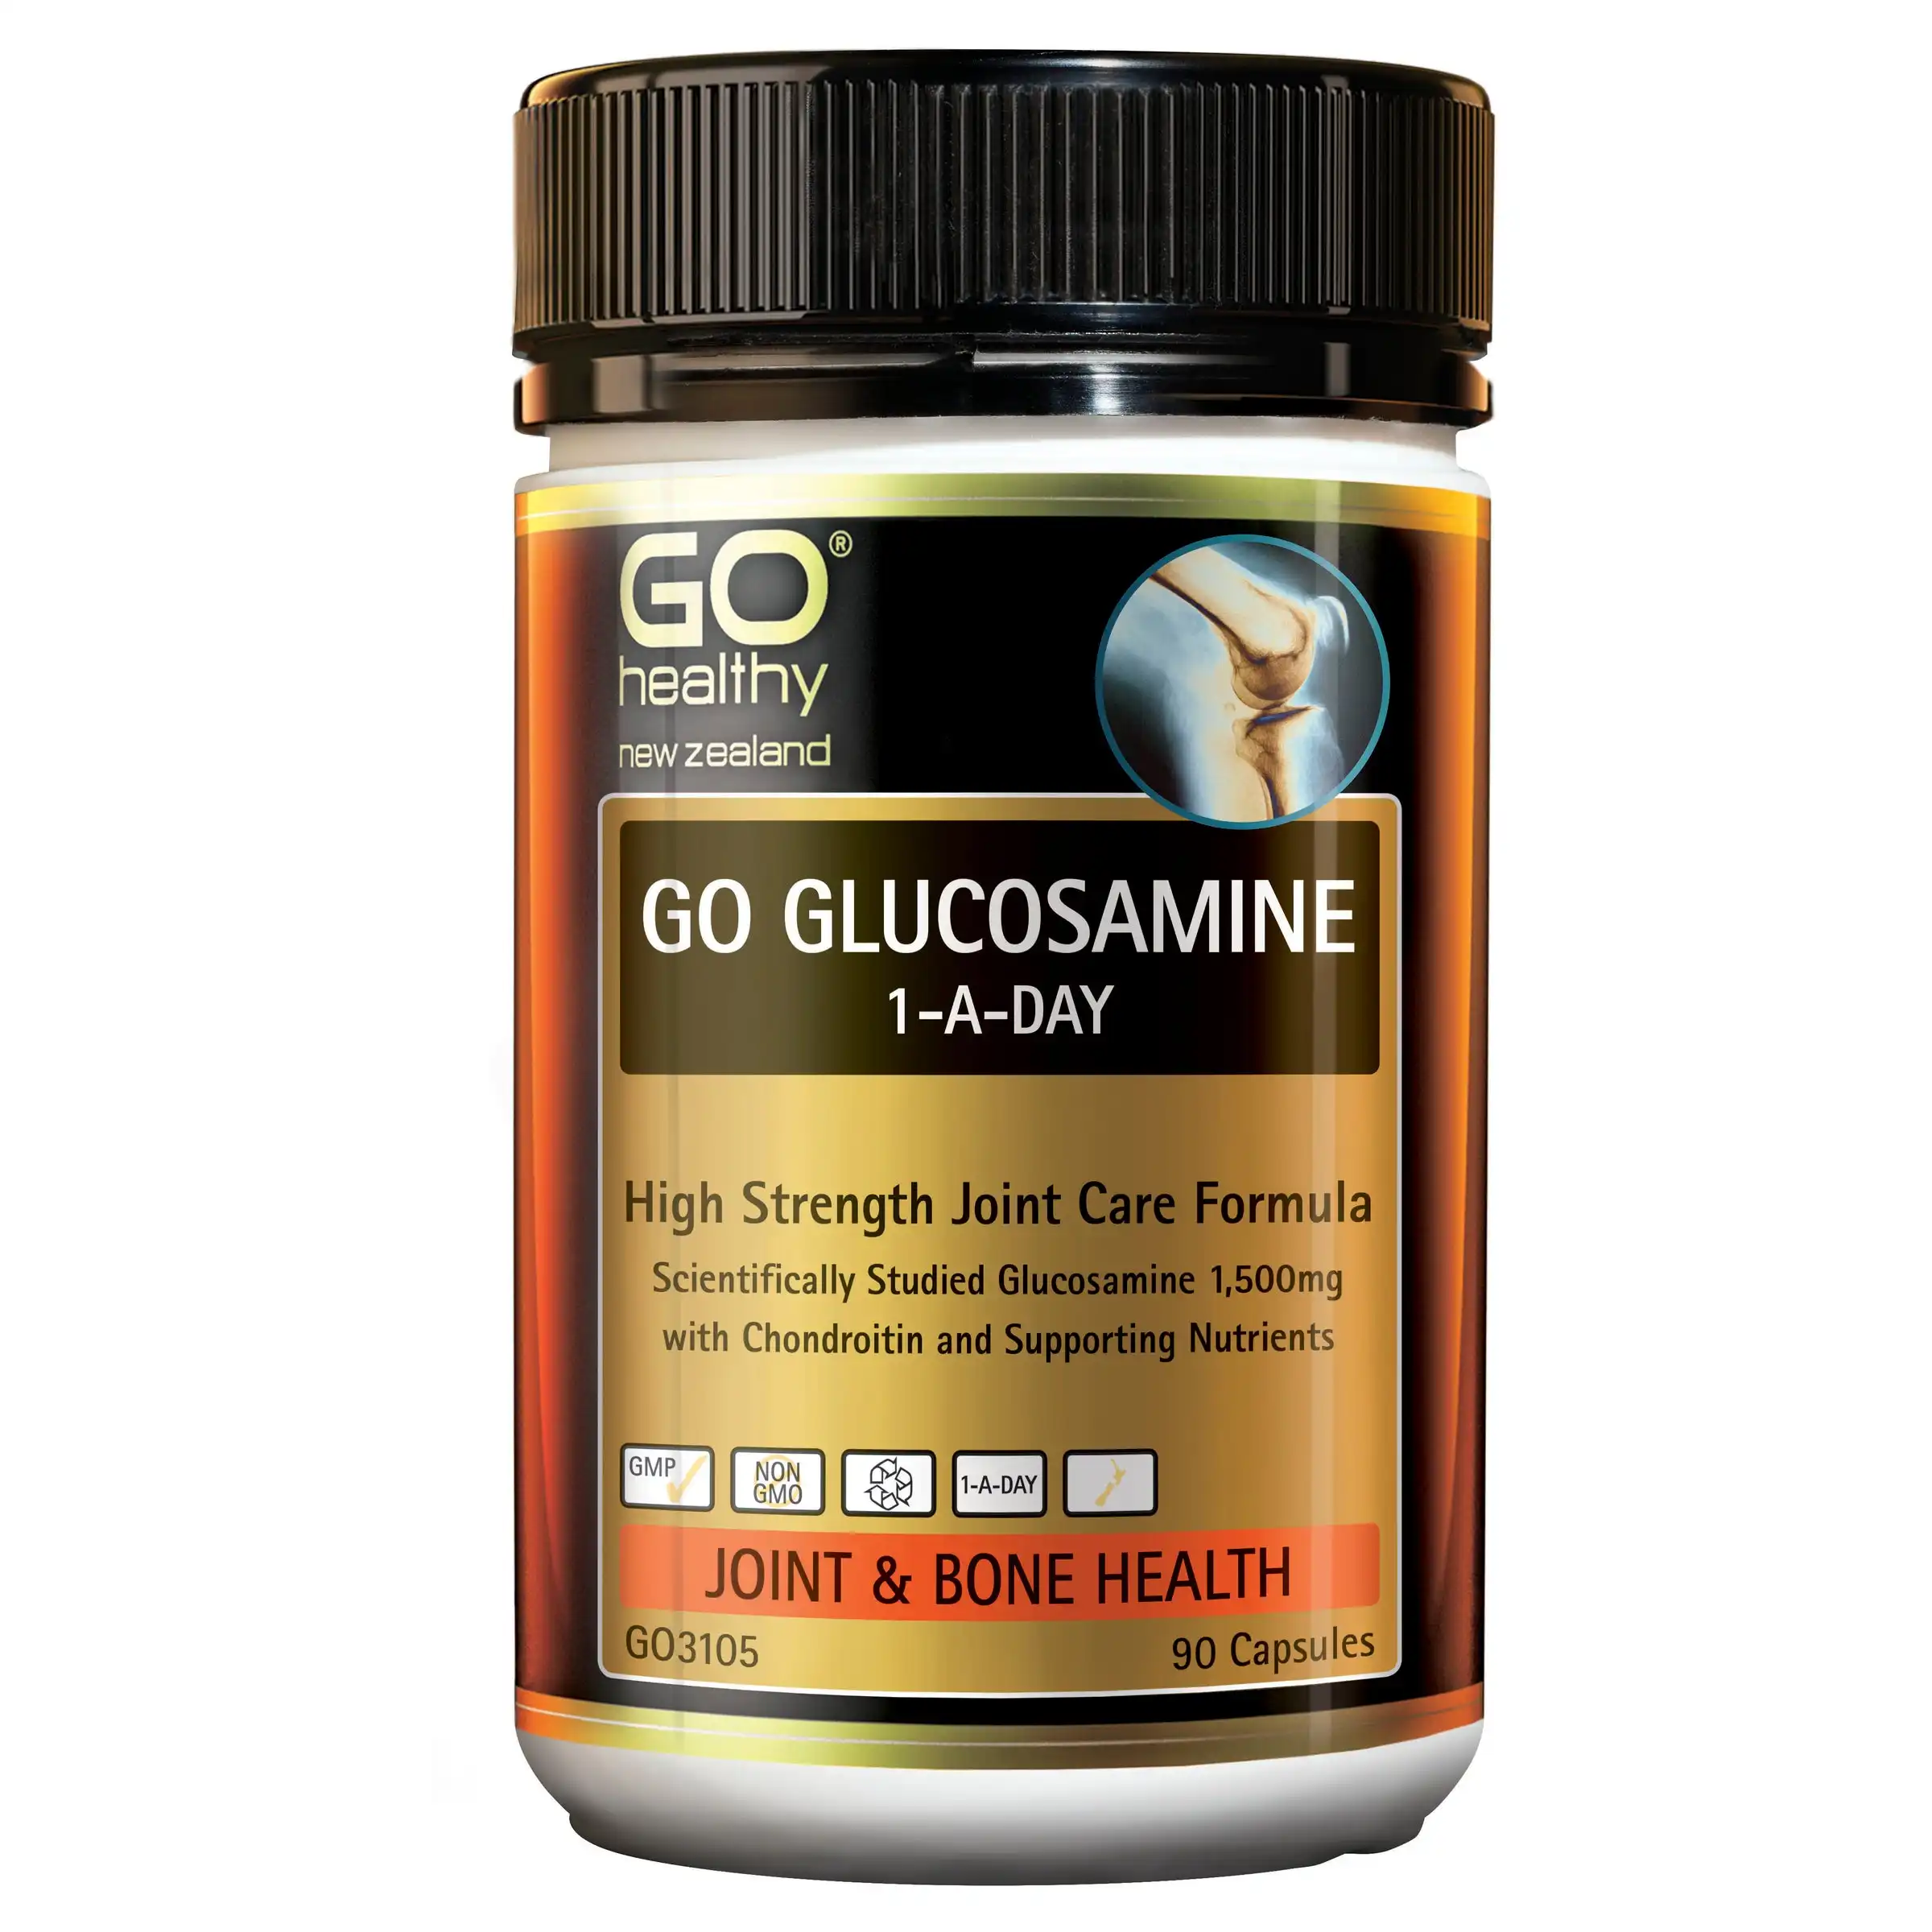 GO Gesundes Glucosamin 1-A-Tag 90 Kapseln Gelenk-und Knochen ergänzung mit Chon droitin wissenschaft lich nachgewiesen